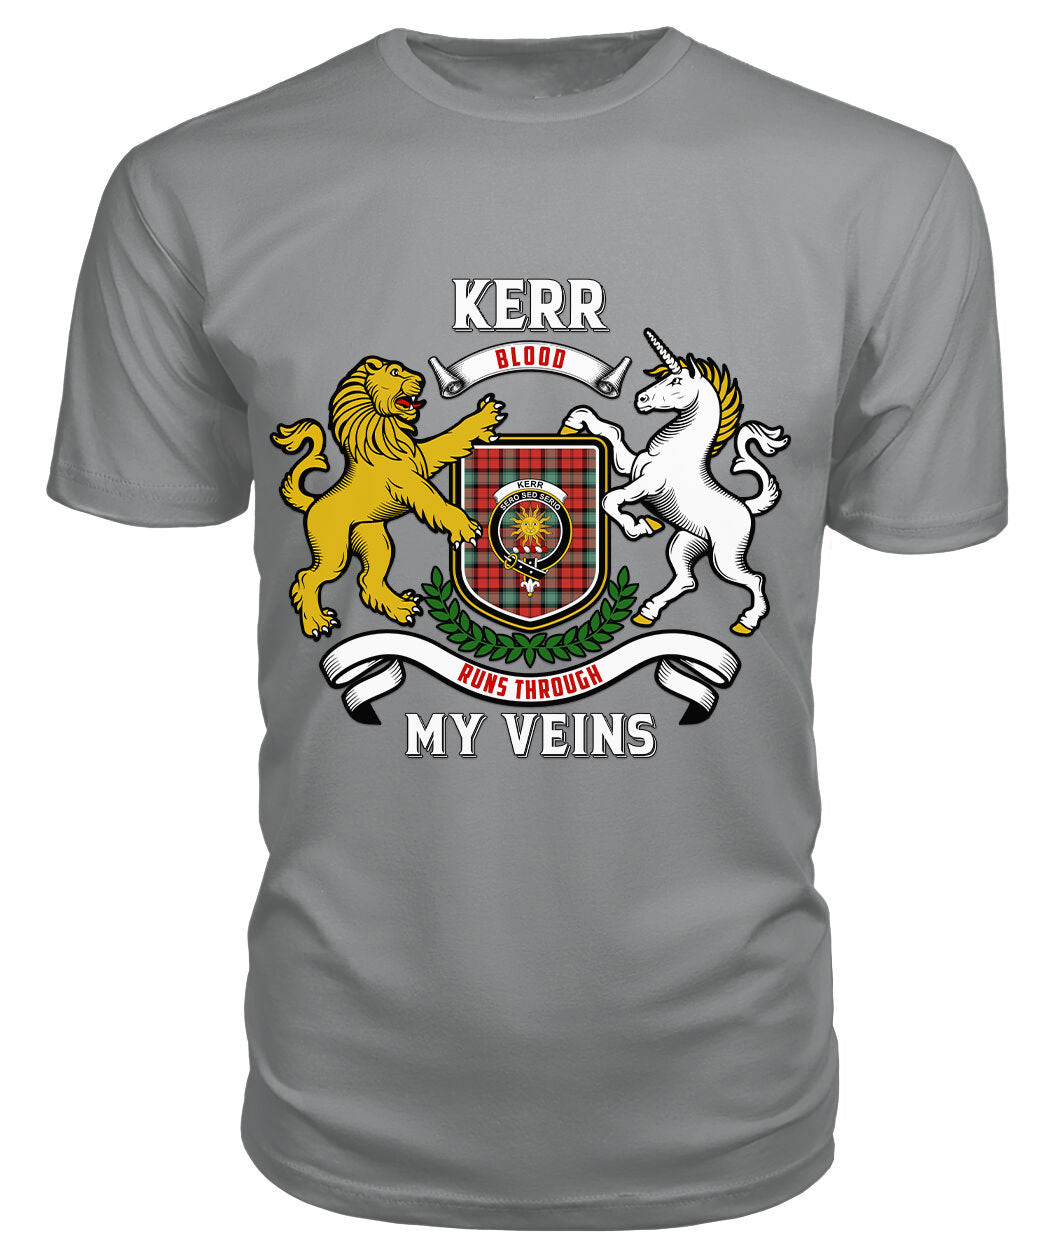 Kerr Ancient Tartan Crest 2D T-shirt - Blood Runs Through My Veins Style